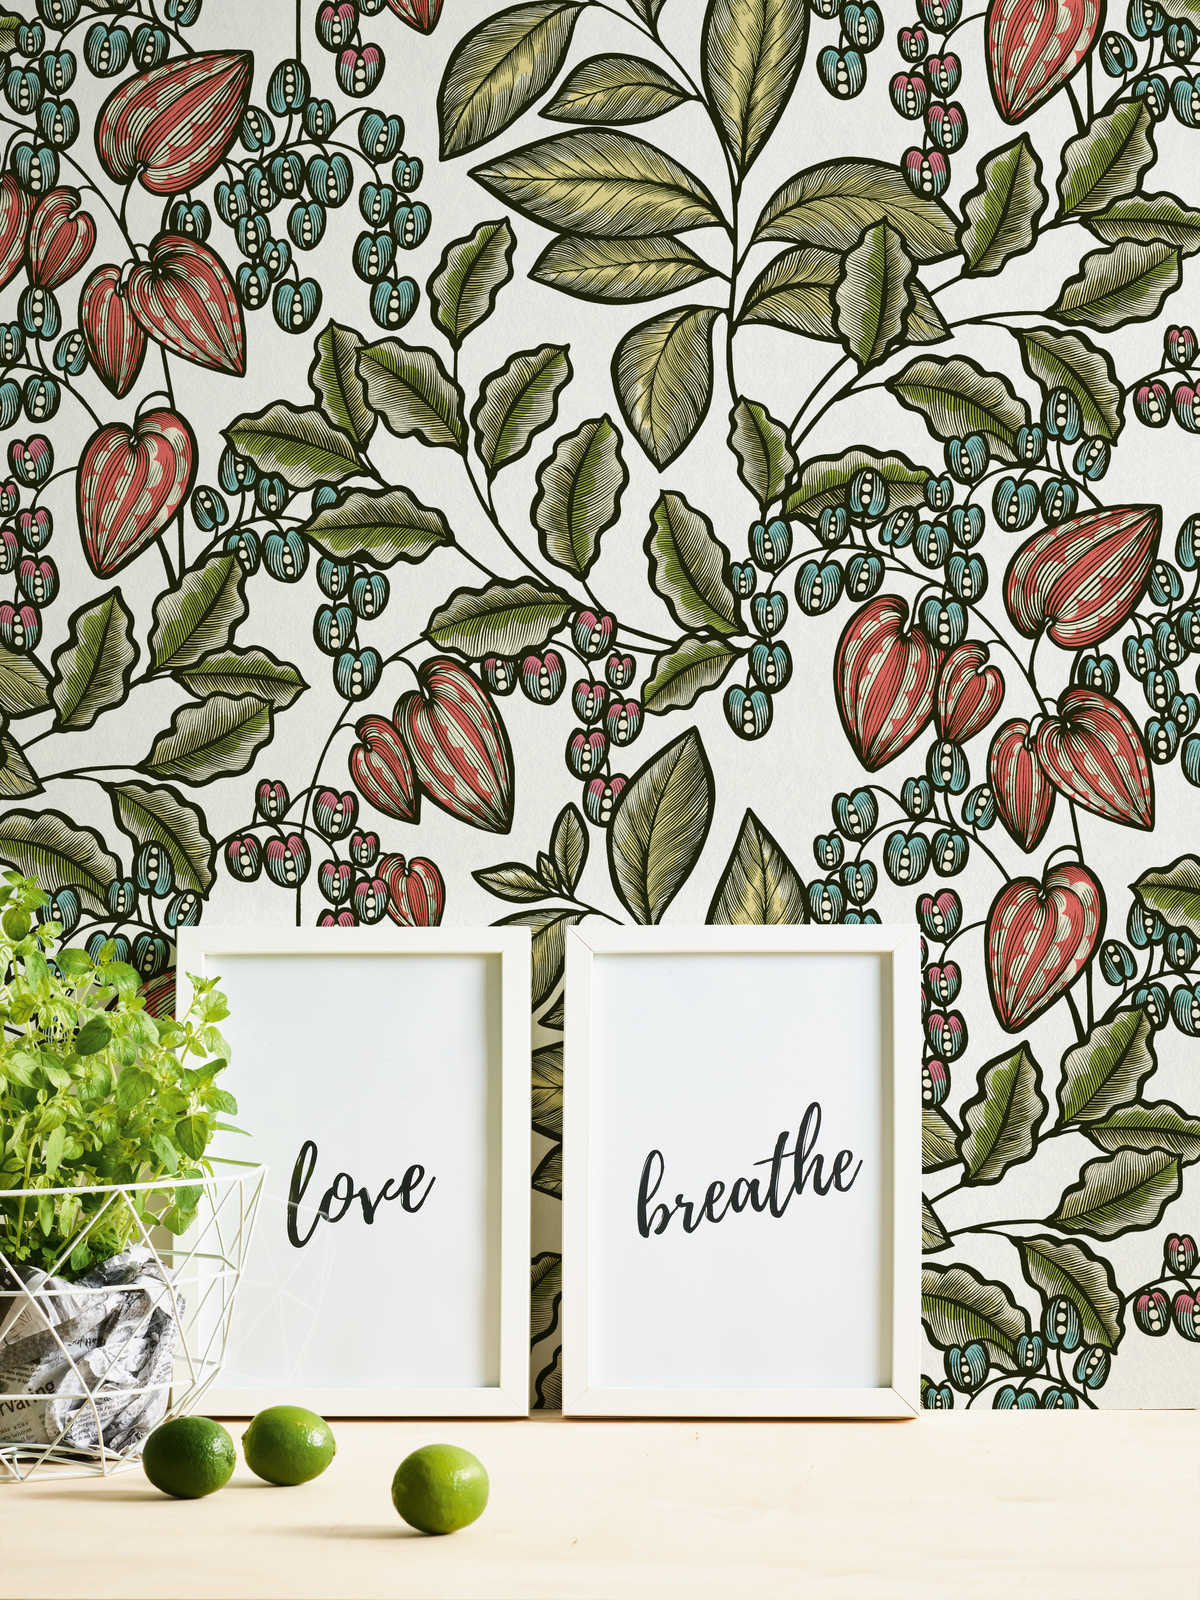             Papier peint floral Nature Design Scandinavian Print - multicolore, vert, blanc
        